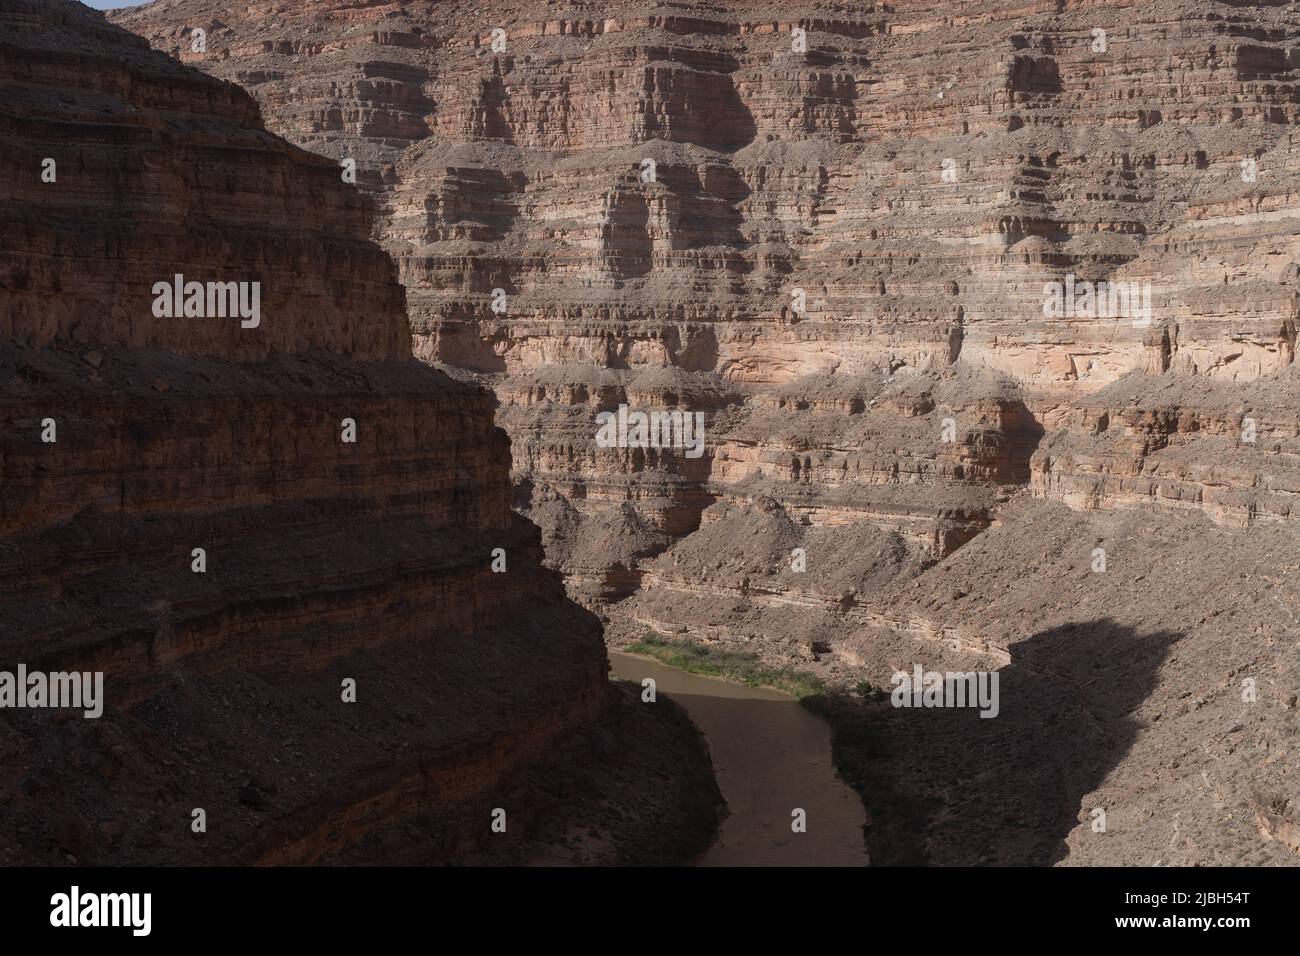 La belleza natural de las formaciones rocosas y los empinados cañones a lo largo del río San Juan en la zona de Four Corners en el sur de Utah. Foto de stock